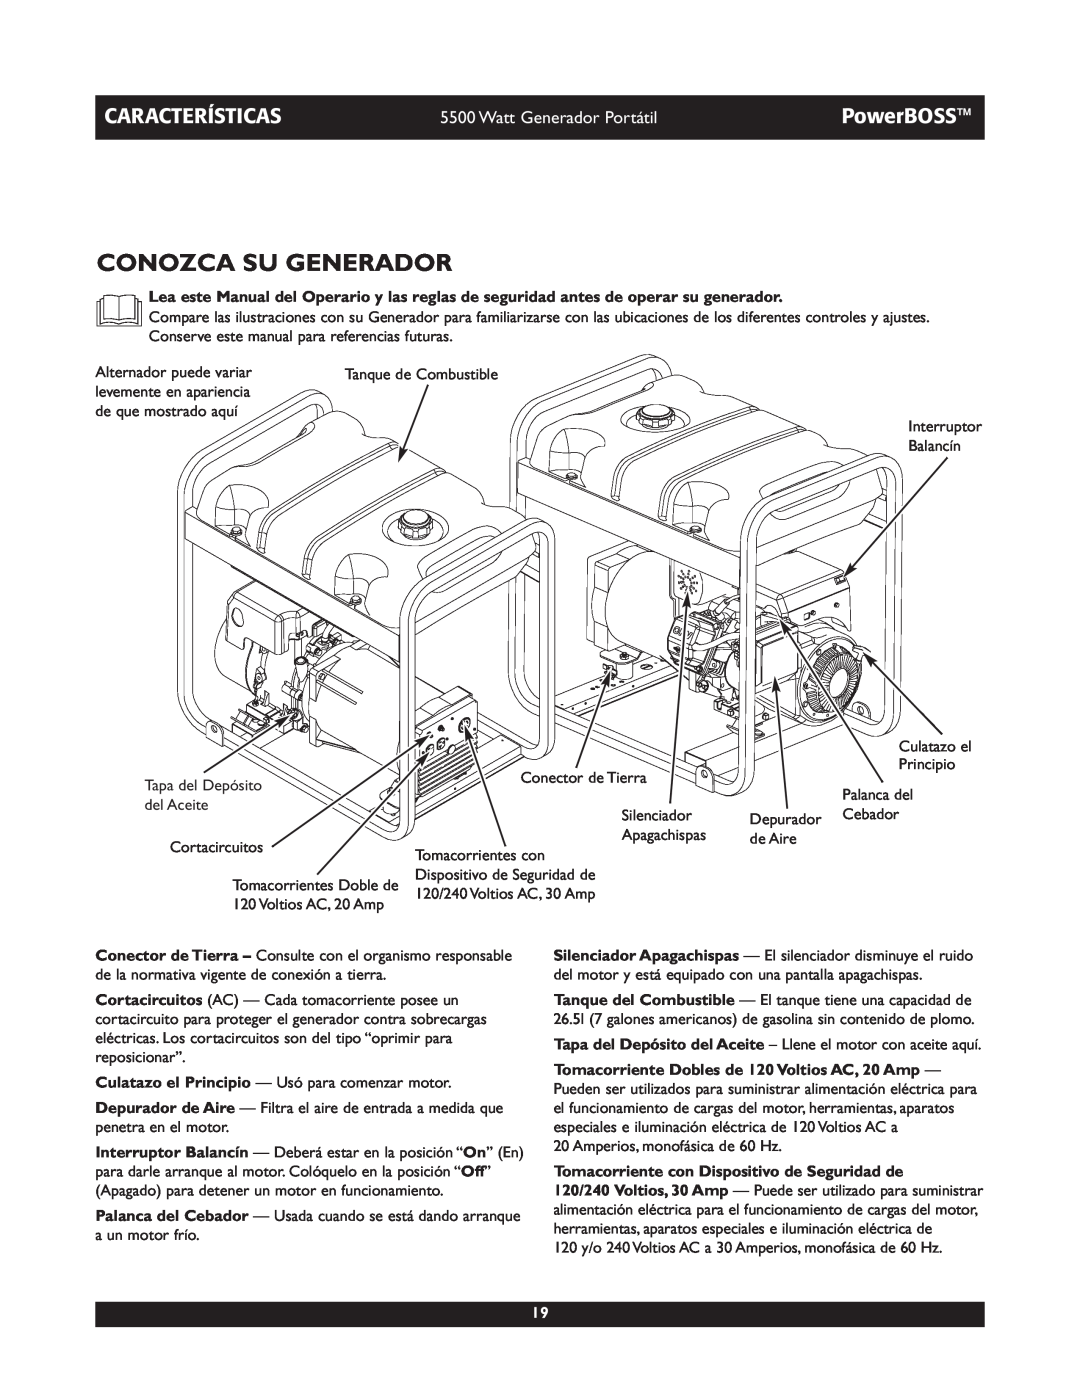 Briggs & Stratton 030255, 030249 manual Conozca Su Generador, Características, PowerBOSS, Watt Generador Portátil 